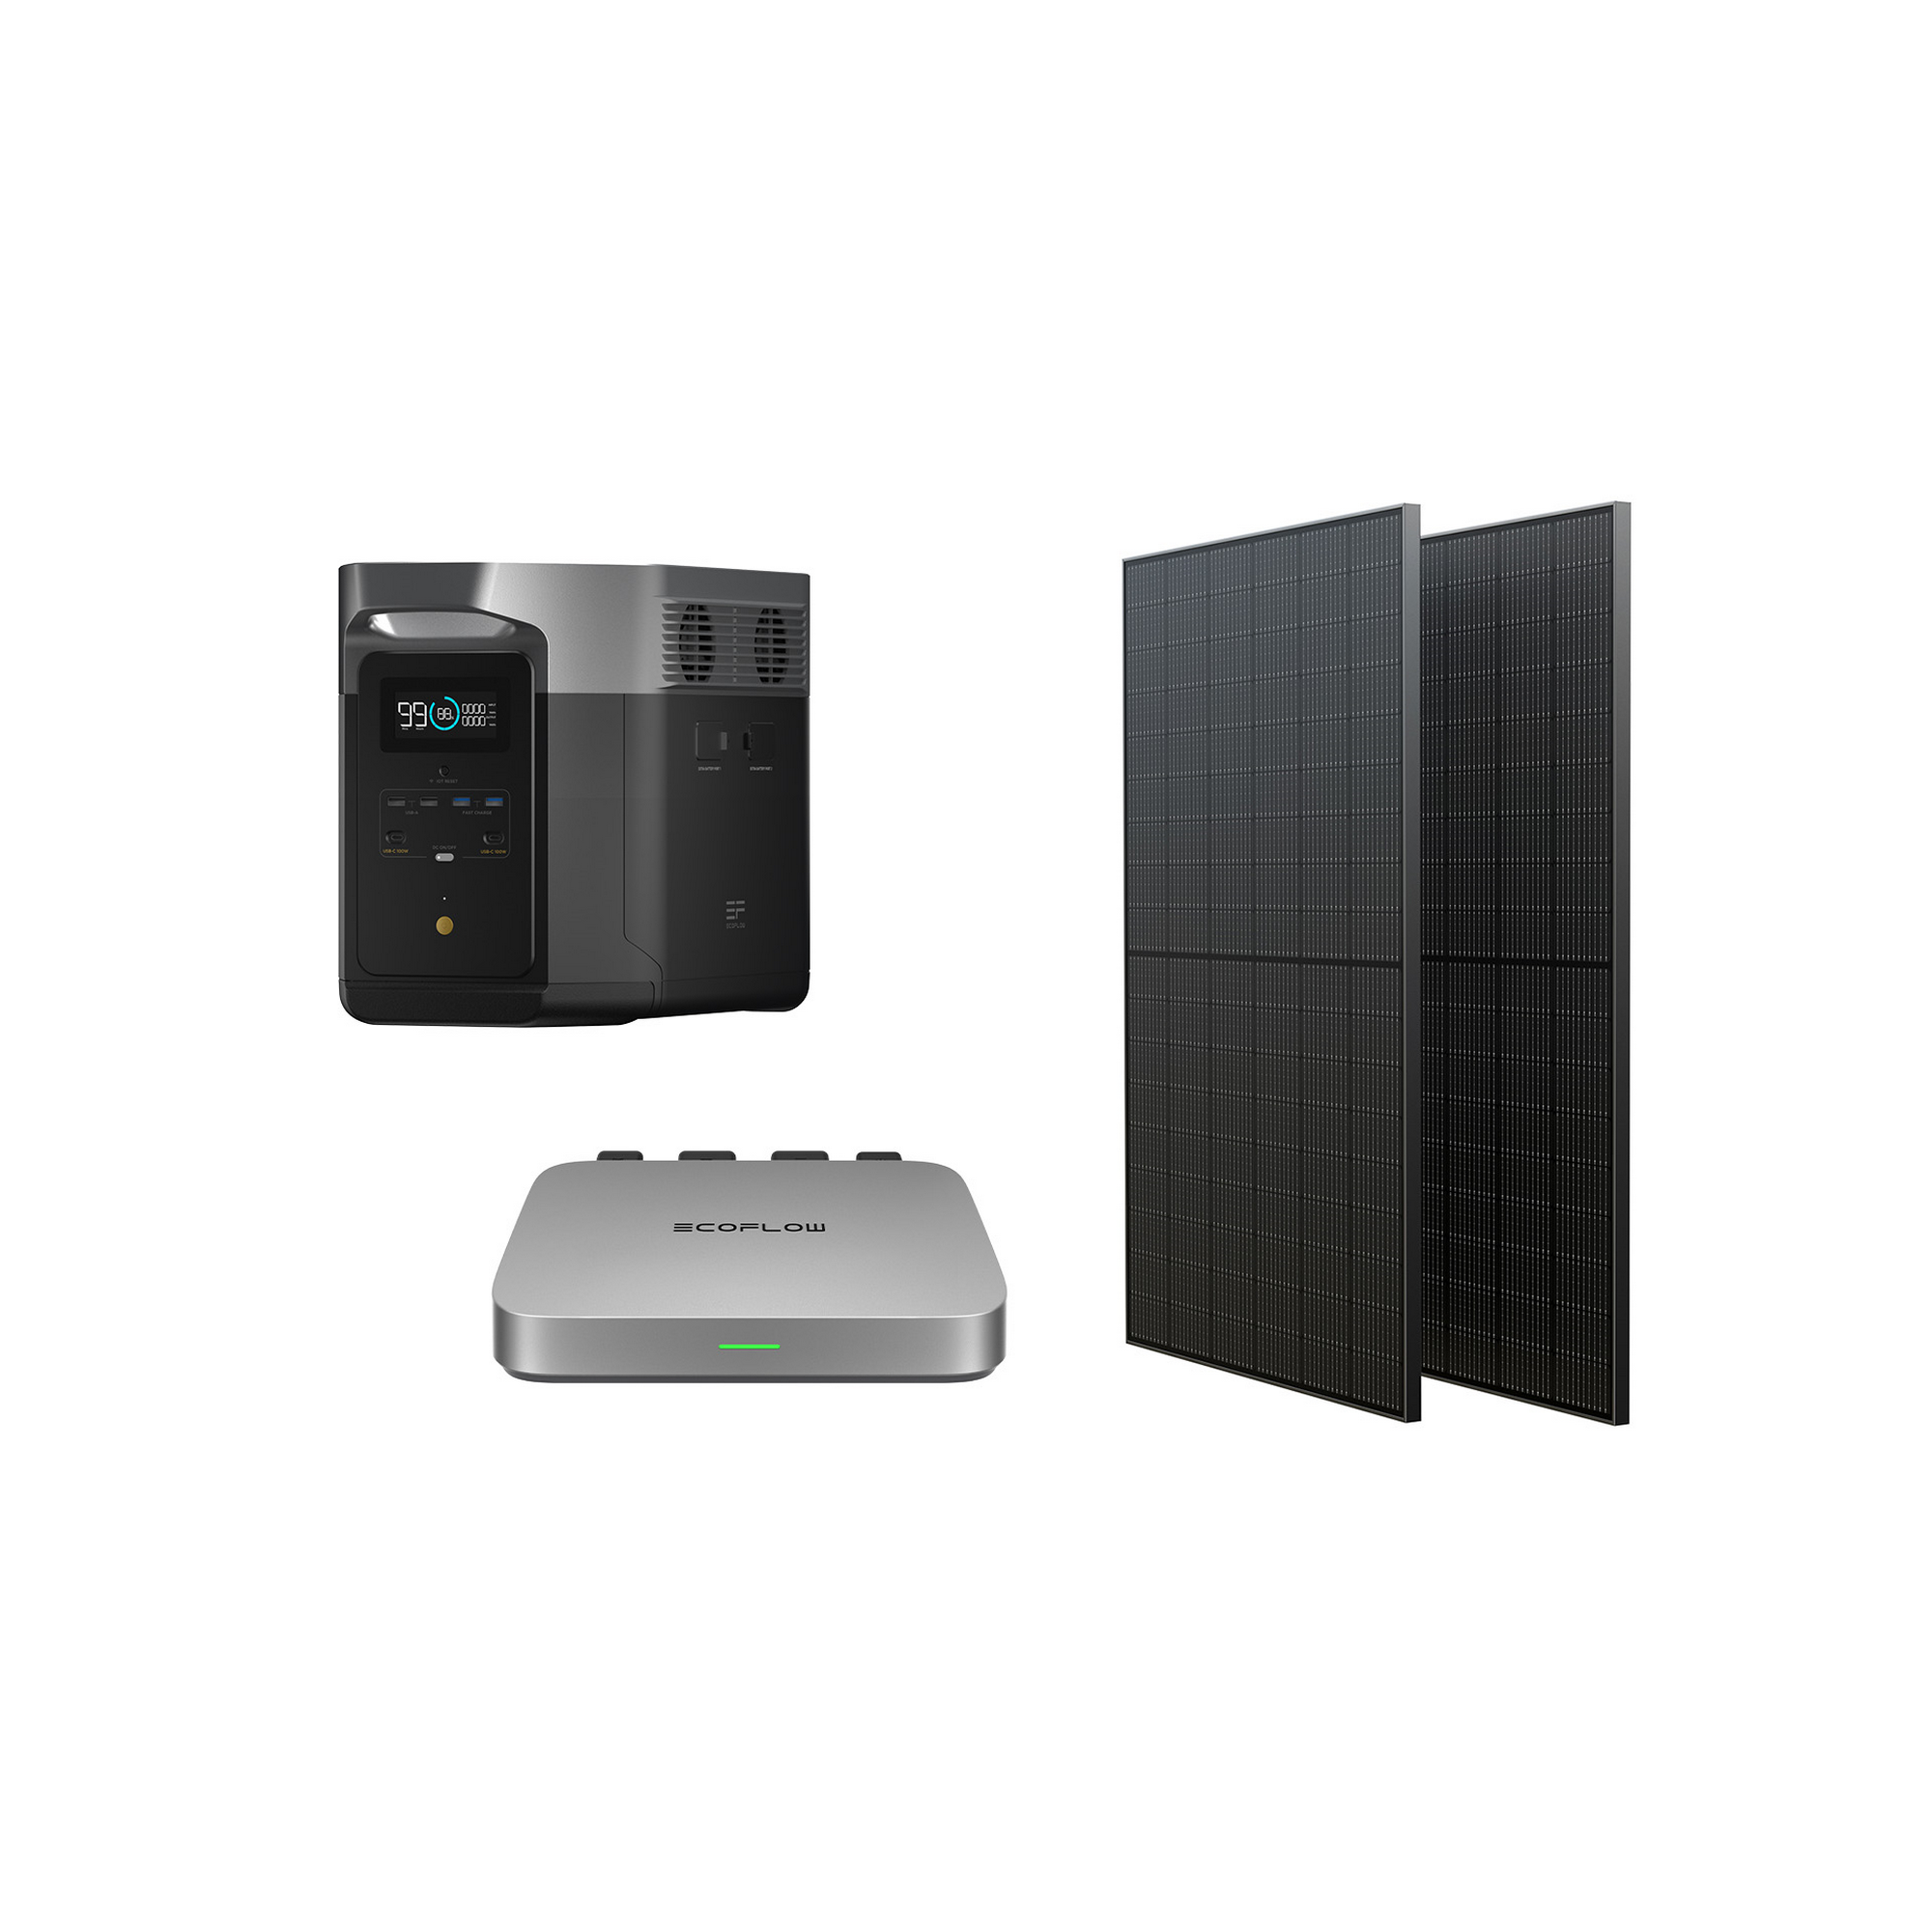 Balkonkraftwerk-Set '600 Delta Max' mit Powerstation Delta Max, PowerStream 600 W und 2 Solarpanele je 400 W + product picture